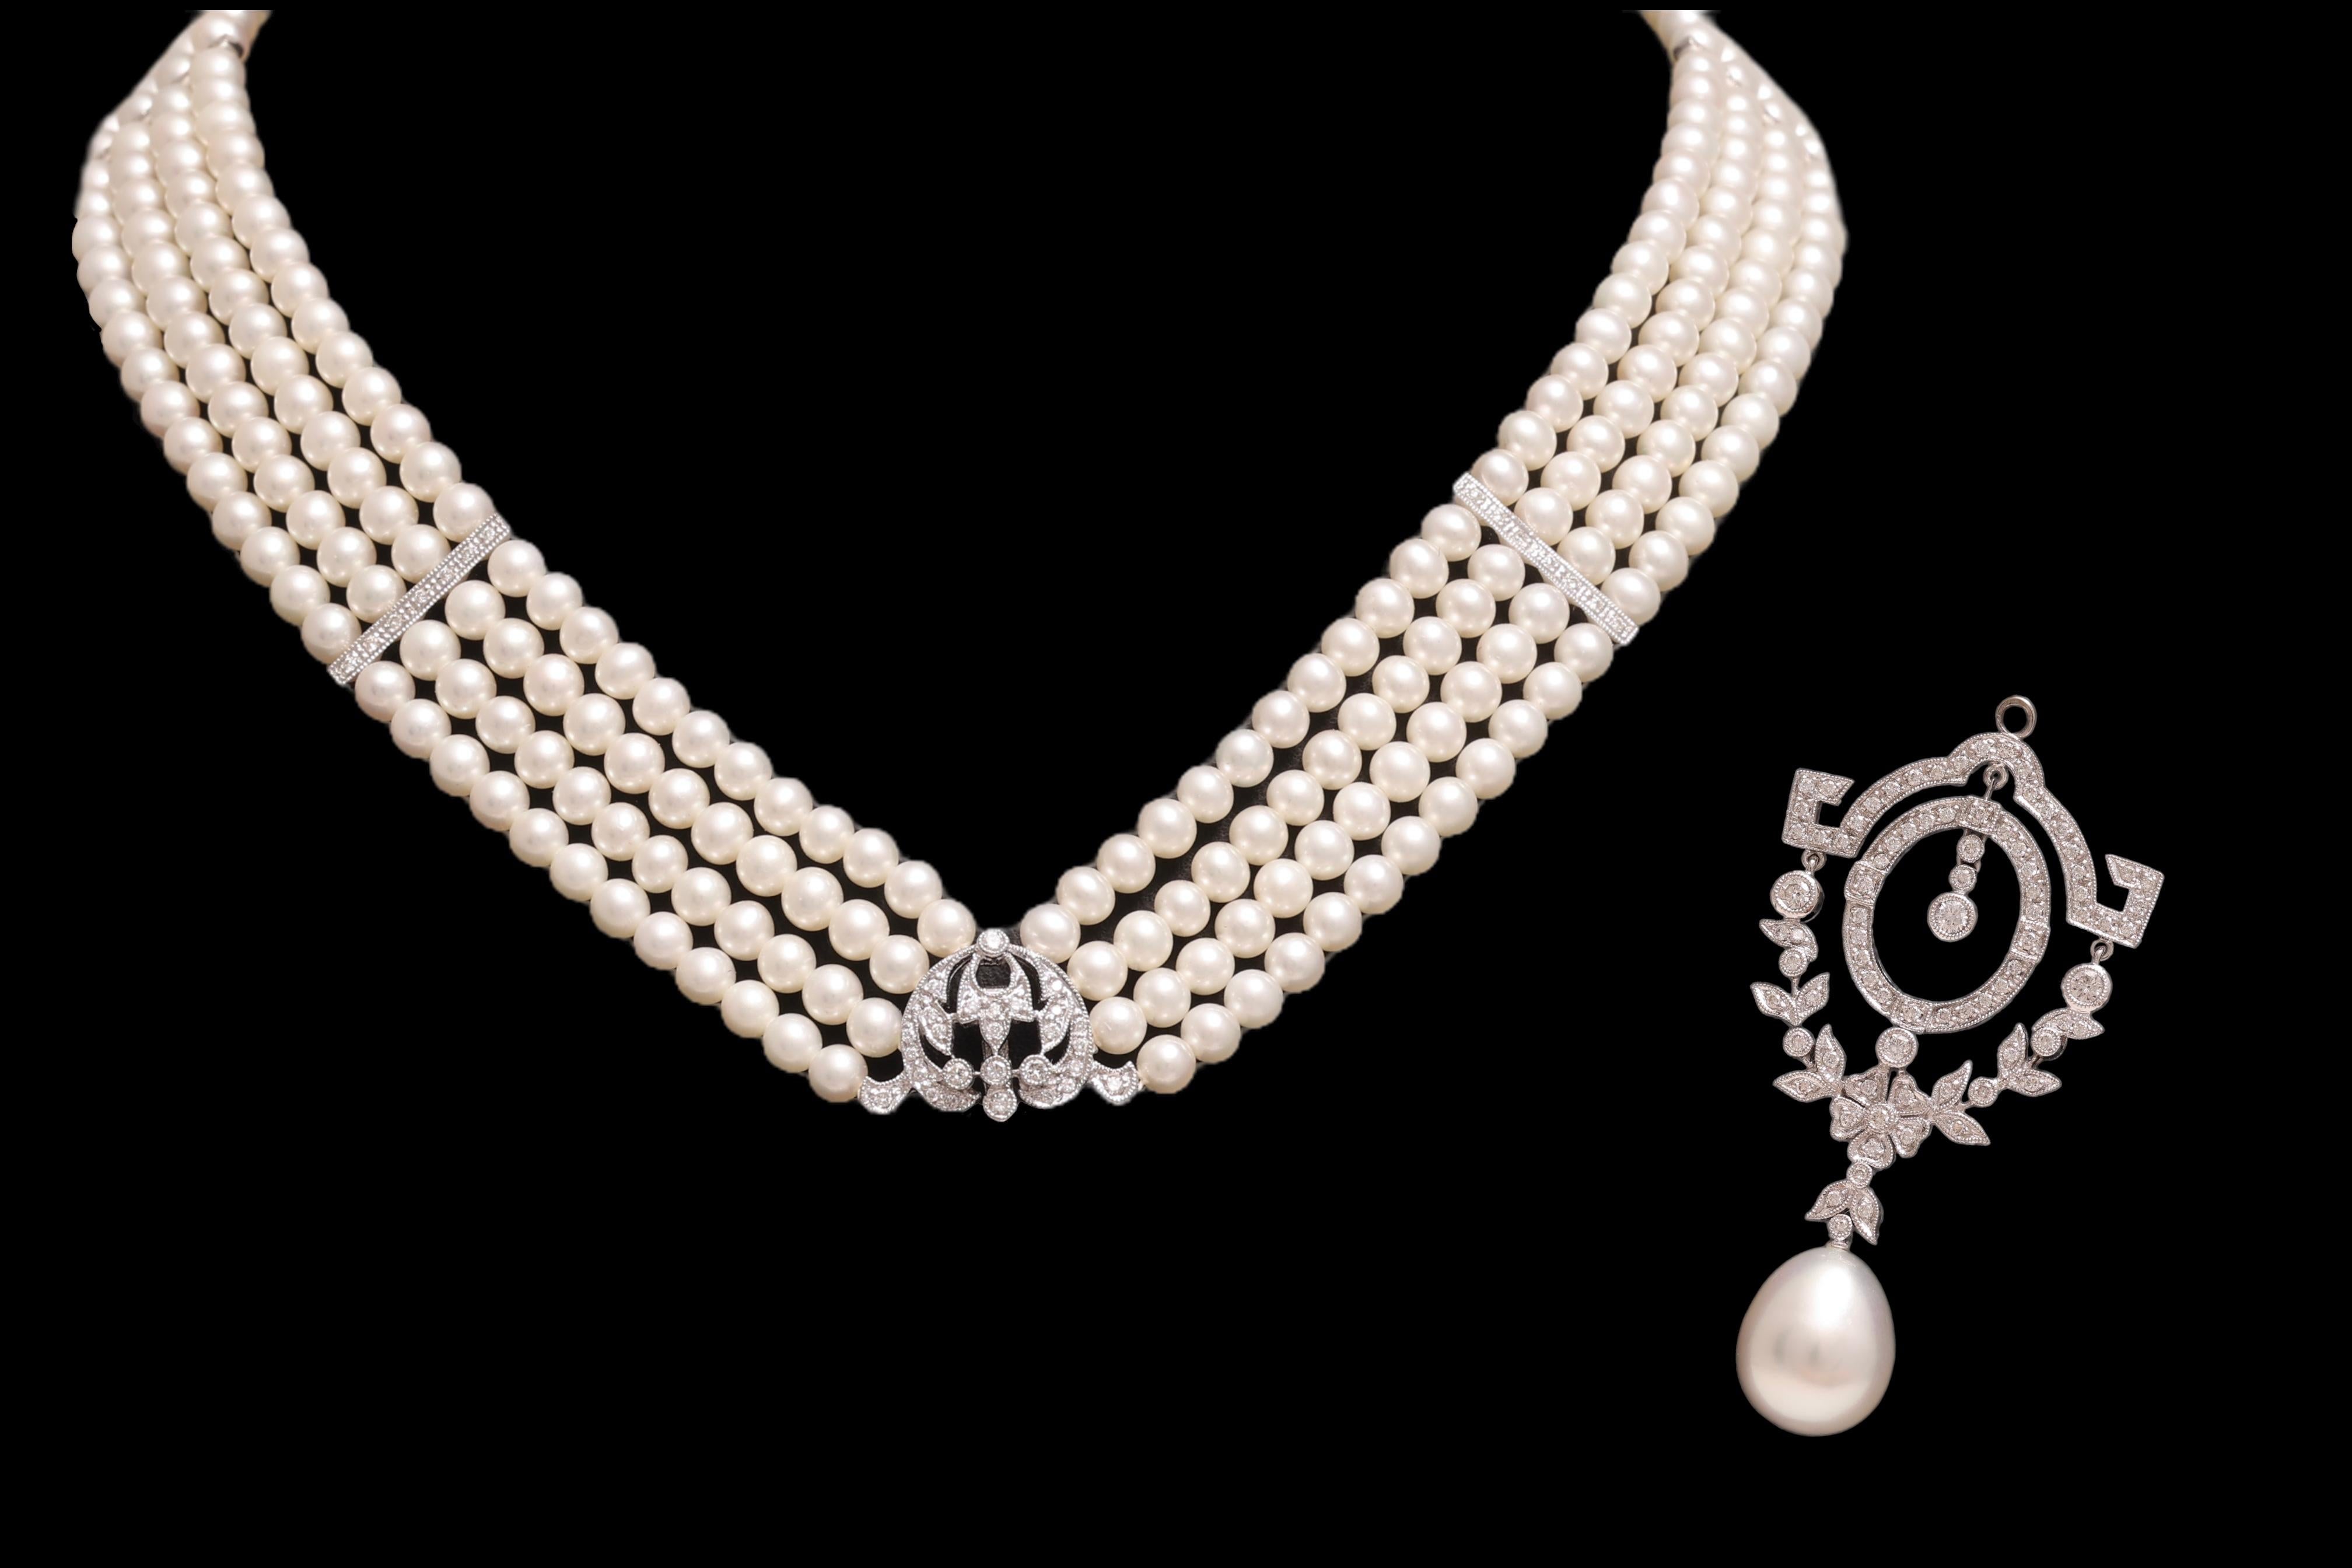 Magnifique, 18 kt. Collier de perles en or blanc avec grande perle des mers du Sud et diamants 

Perles : 4 rangs de perles d'eau douce d'environ 4 mm chacun, 344 perles au total
1 Grande perle des mers du sud australienne environ 14,35 mm x 12,1